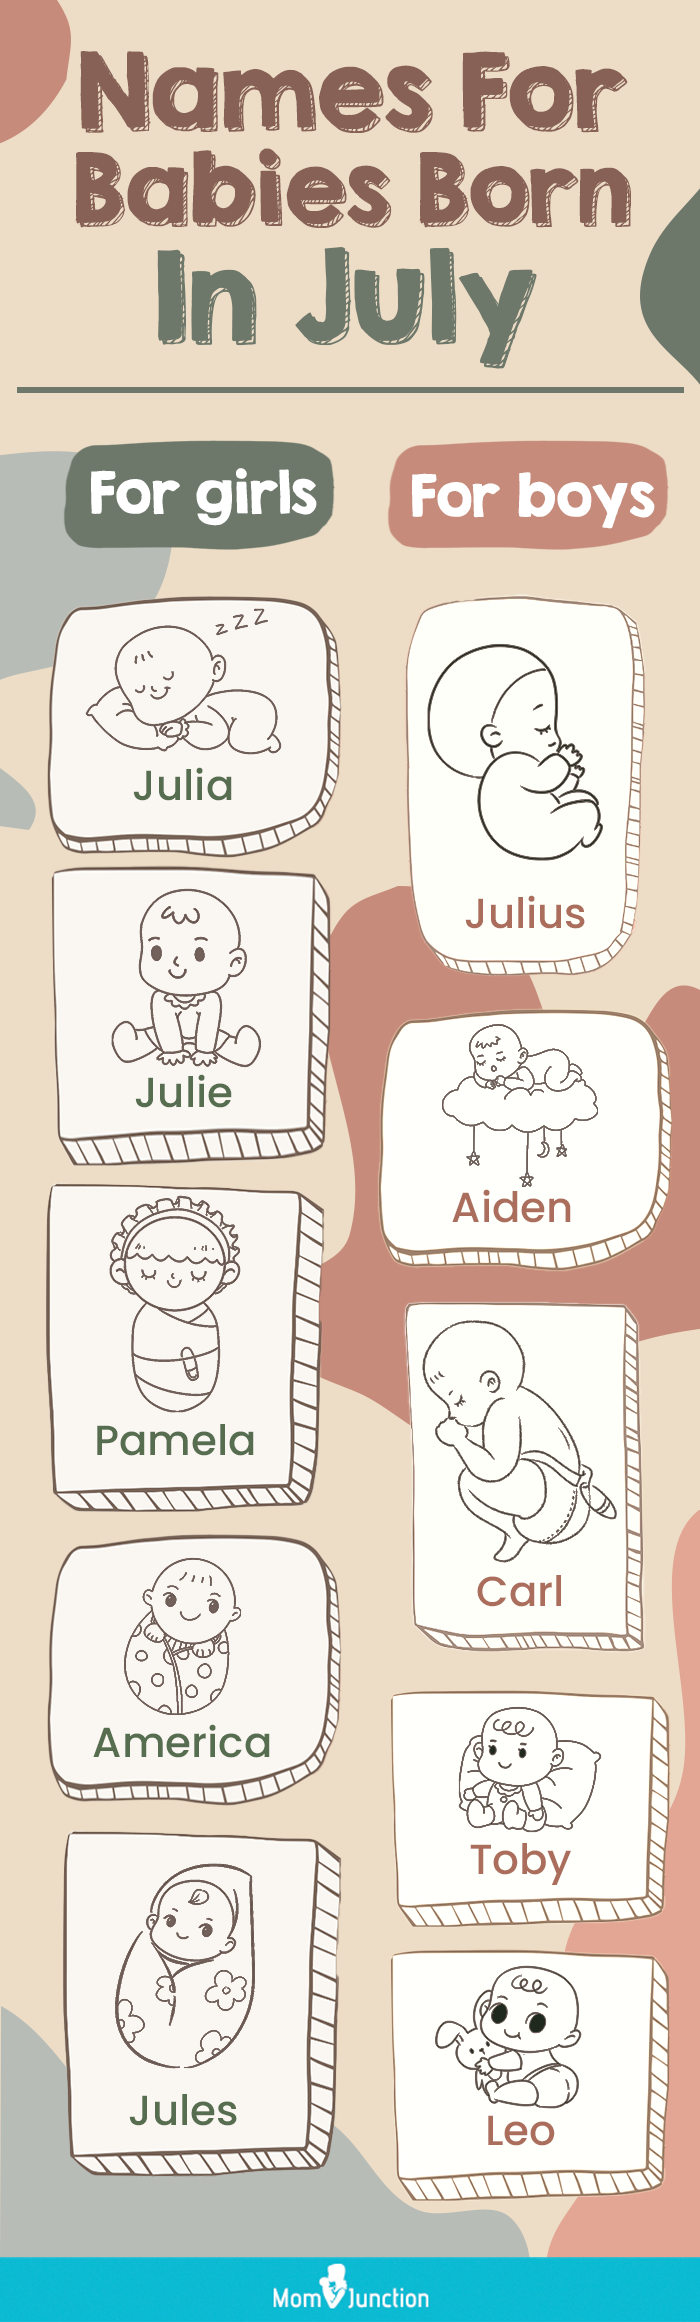 七月出生的婴儿的名字(信息图)